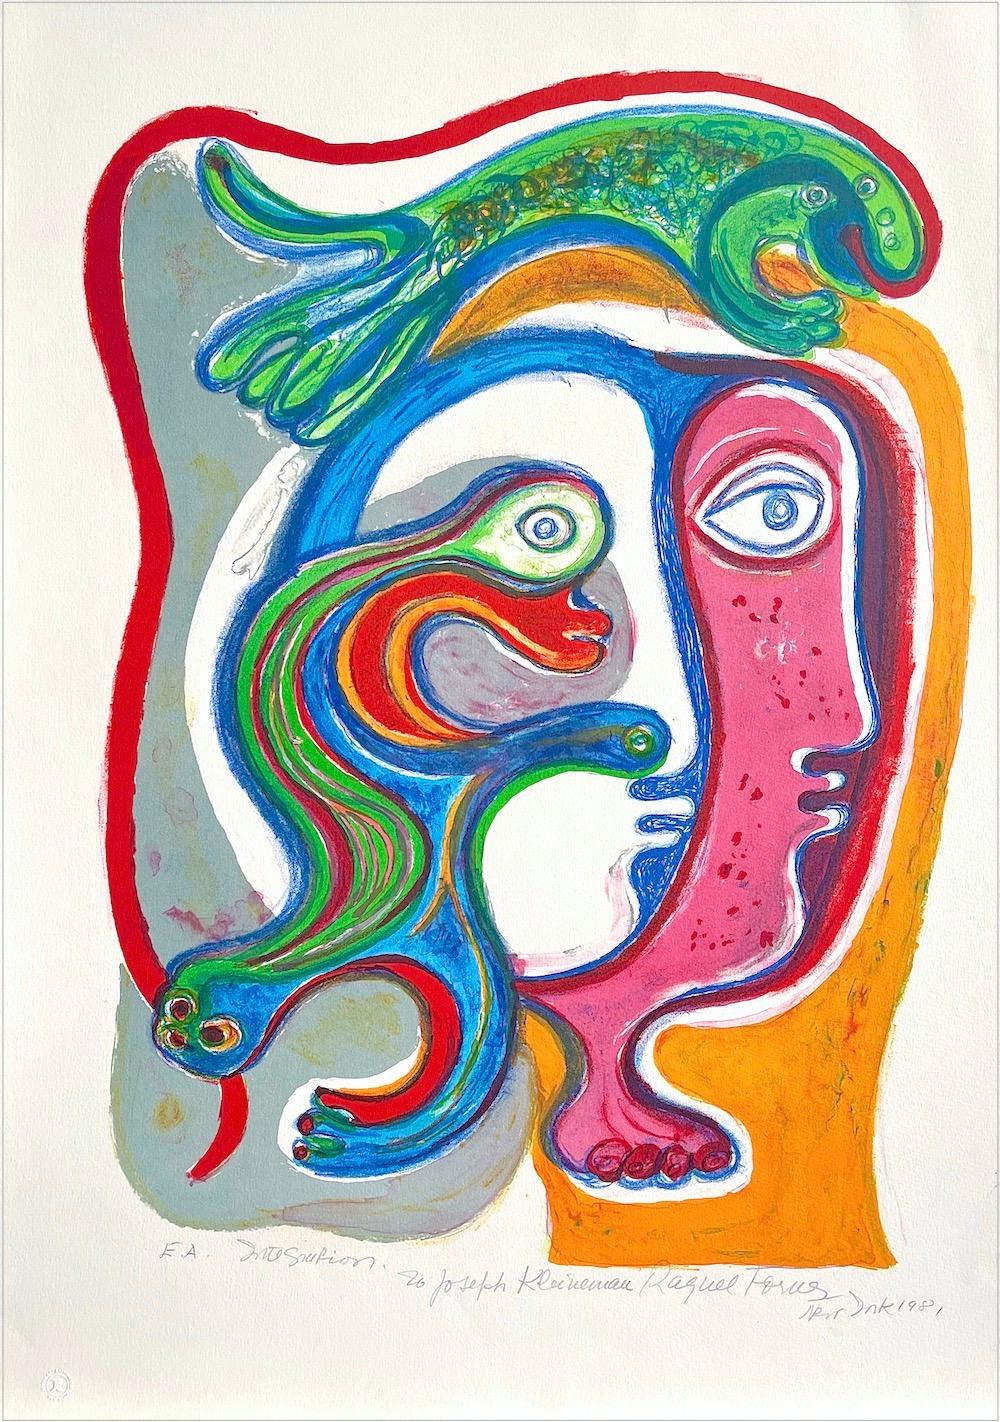 Lithographie signée, portrait abstrait, artiste latino-américaine représentant une femme - Print de Raquel Forner